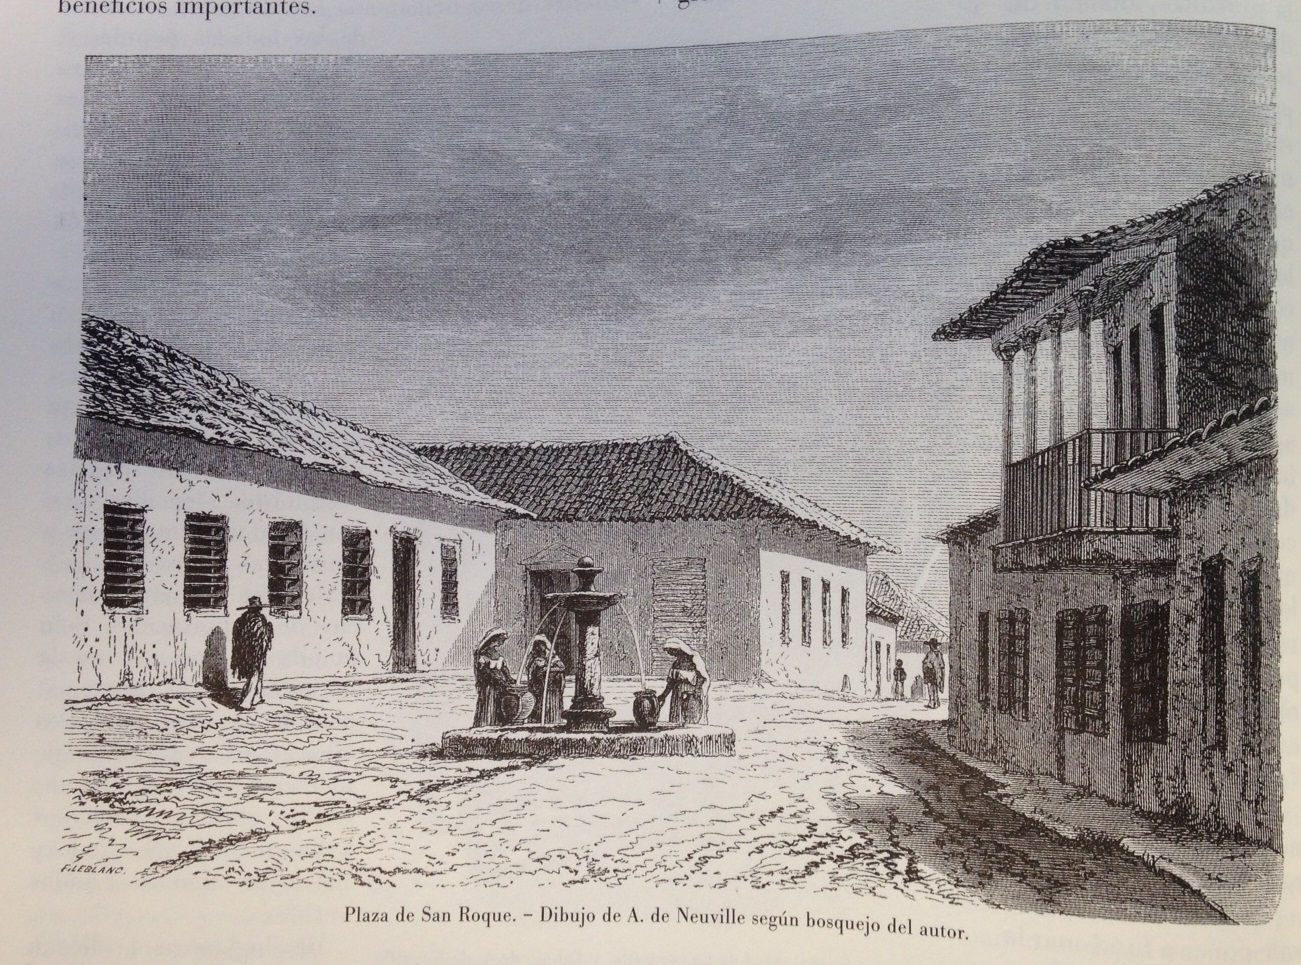 PLAZA DE SAN ROQUE (1868)